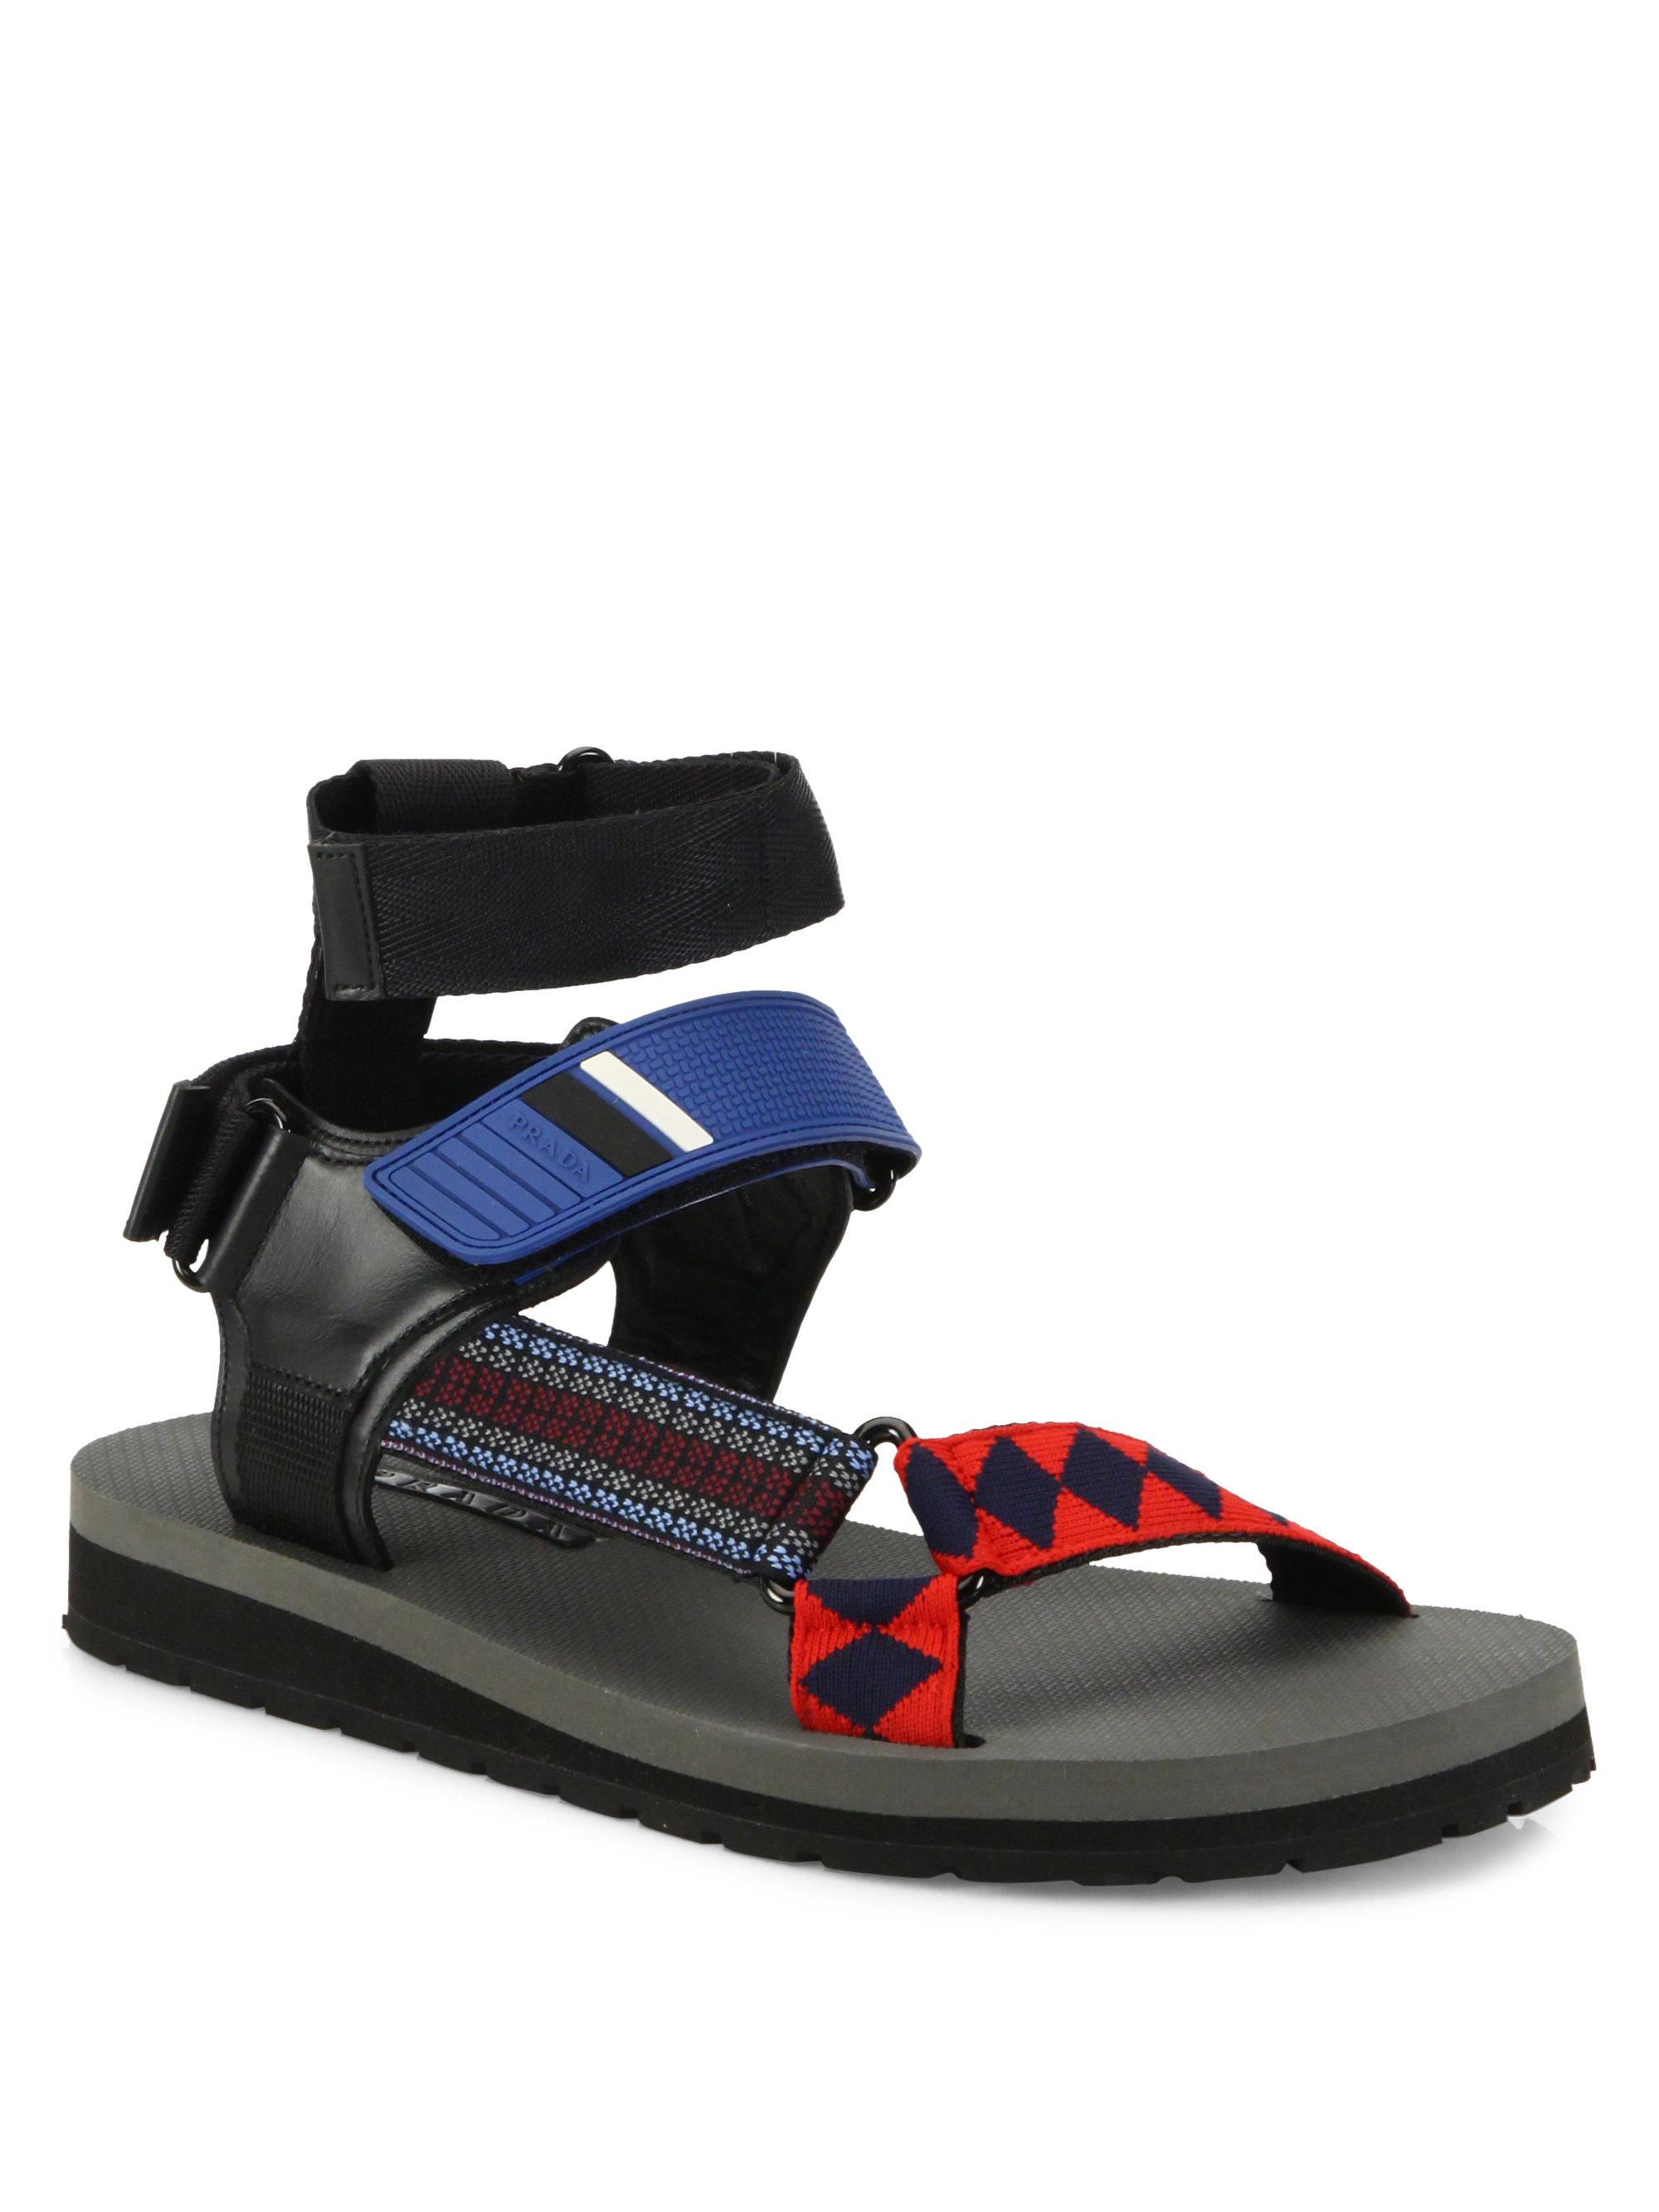 crocs shoes sandals